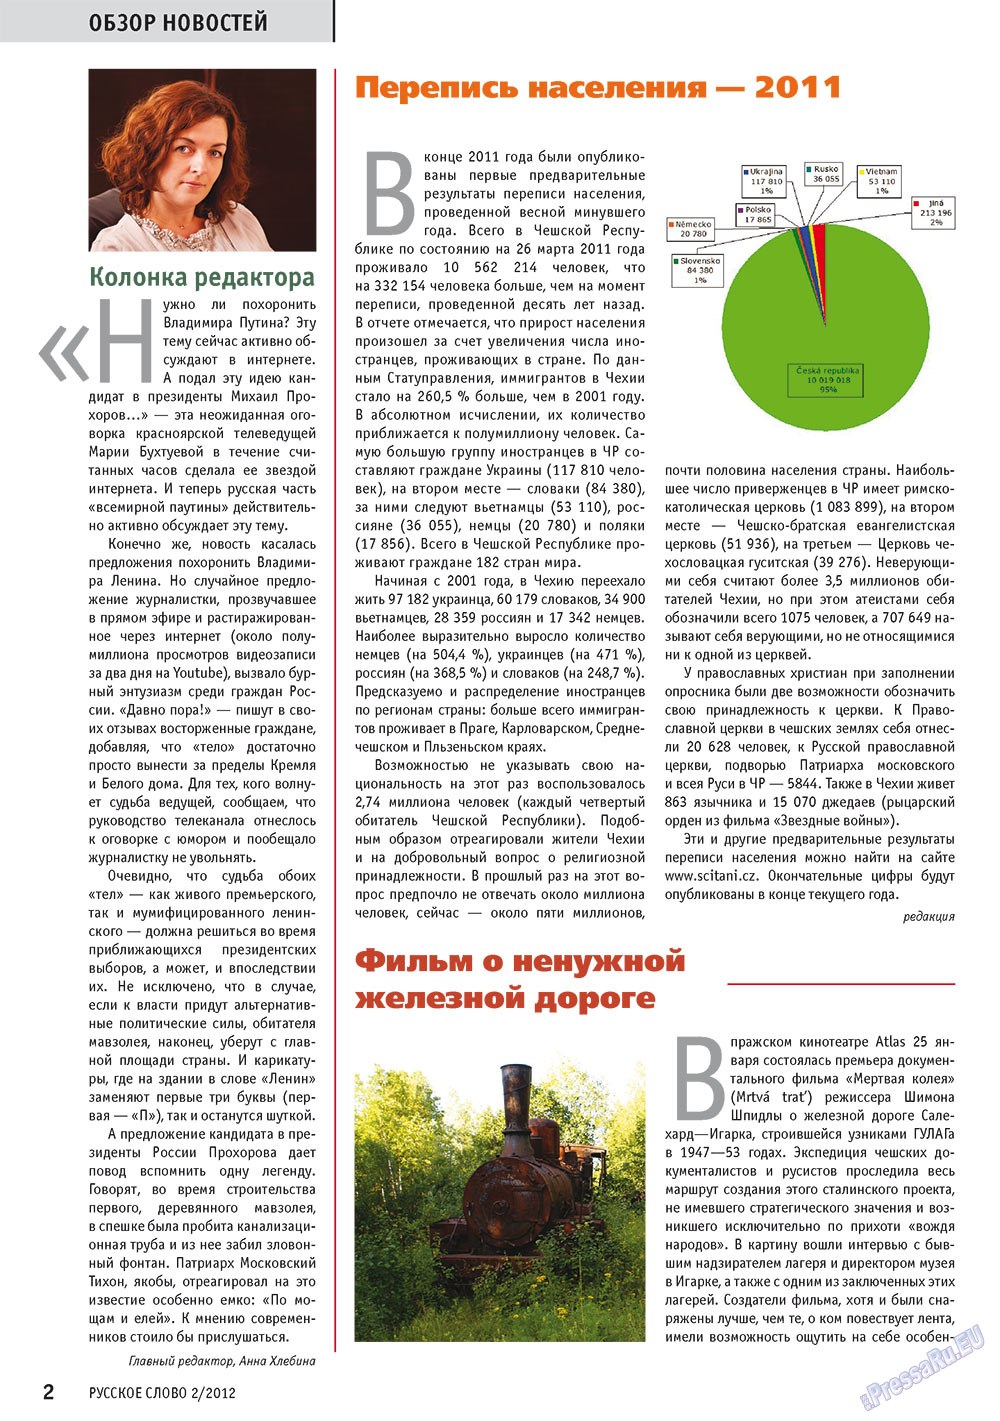 Русское слово, журнал. 2012 №2 стр.4